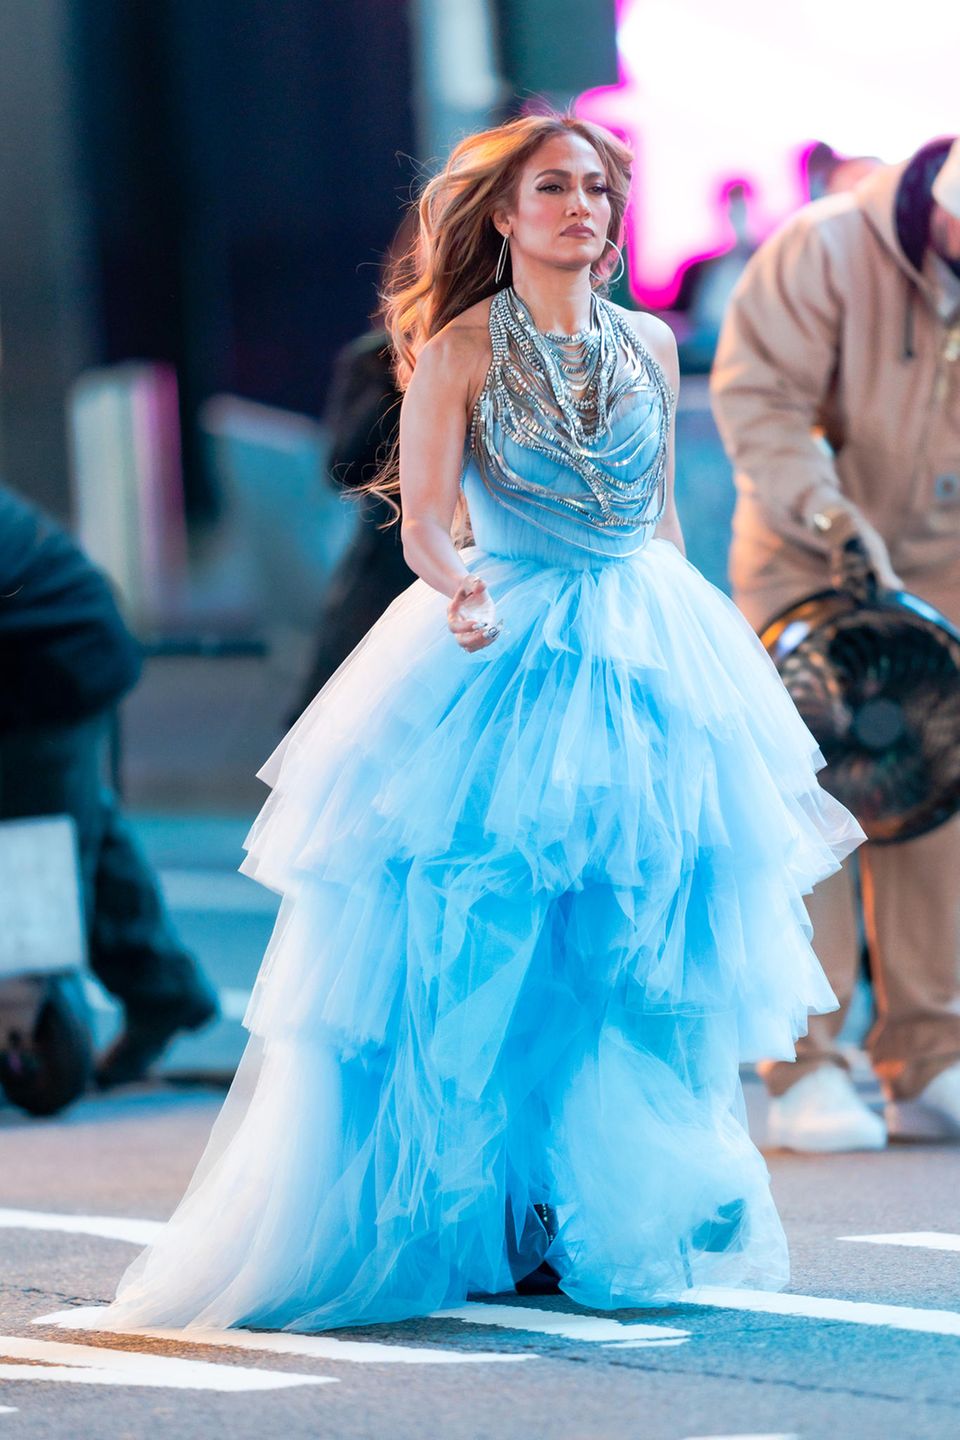 An Silvester darf bekanntermaßen das Outfit etwas glamouröser ausfallen, aber hat Jennifer Lopez mit diesem Rüschentraum nicht übertrieben? Bei der hellblauen Robe handelt es sich um ein Outfit der Neujahrs-Performance am Times Square und liegt damit vollkommen im Rahmen. Die Show wird im Fernsehen übertragen - da darf das Kleid ruhig auch einmal vom Stardesigner Olivier Rousteing sein. 